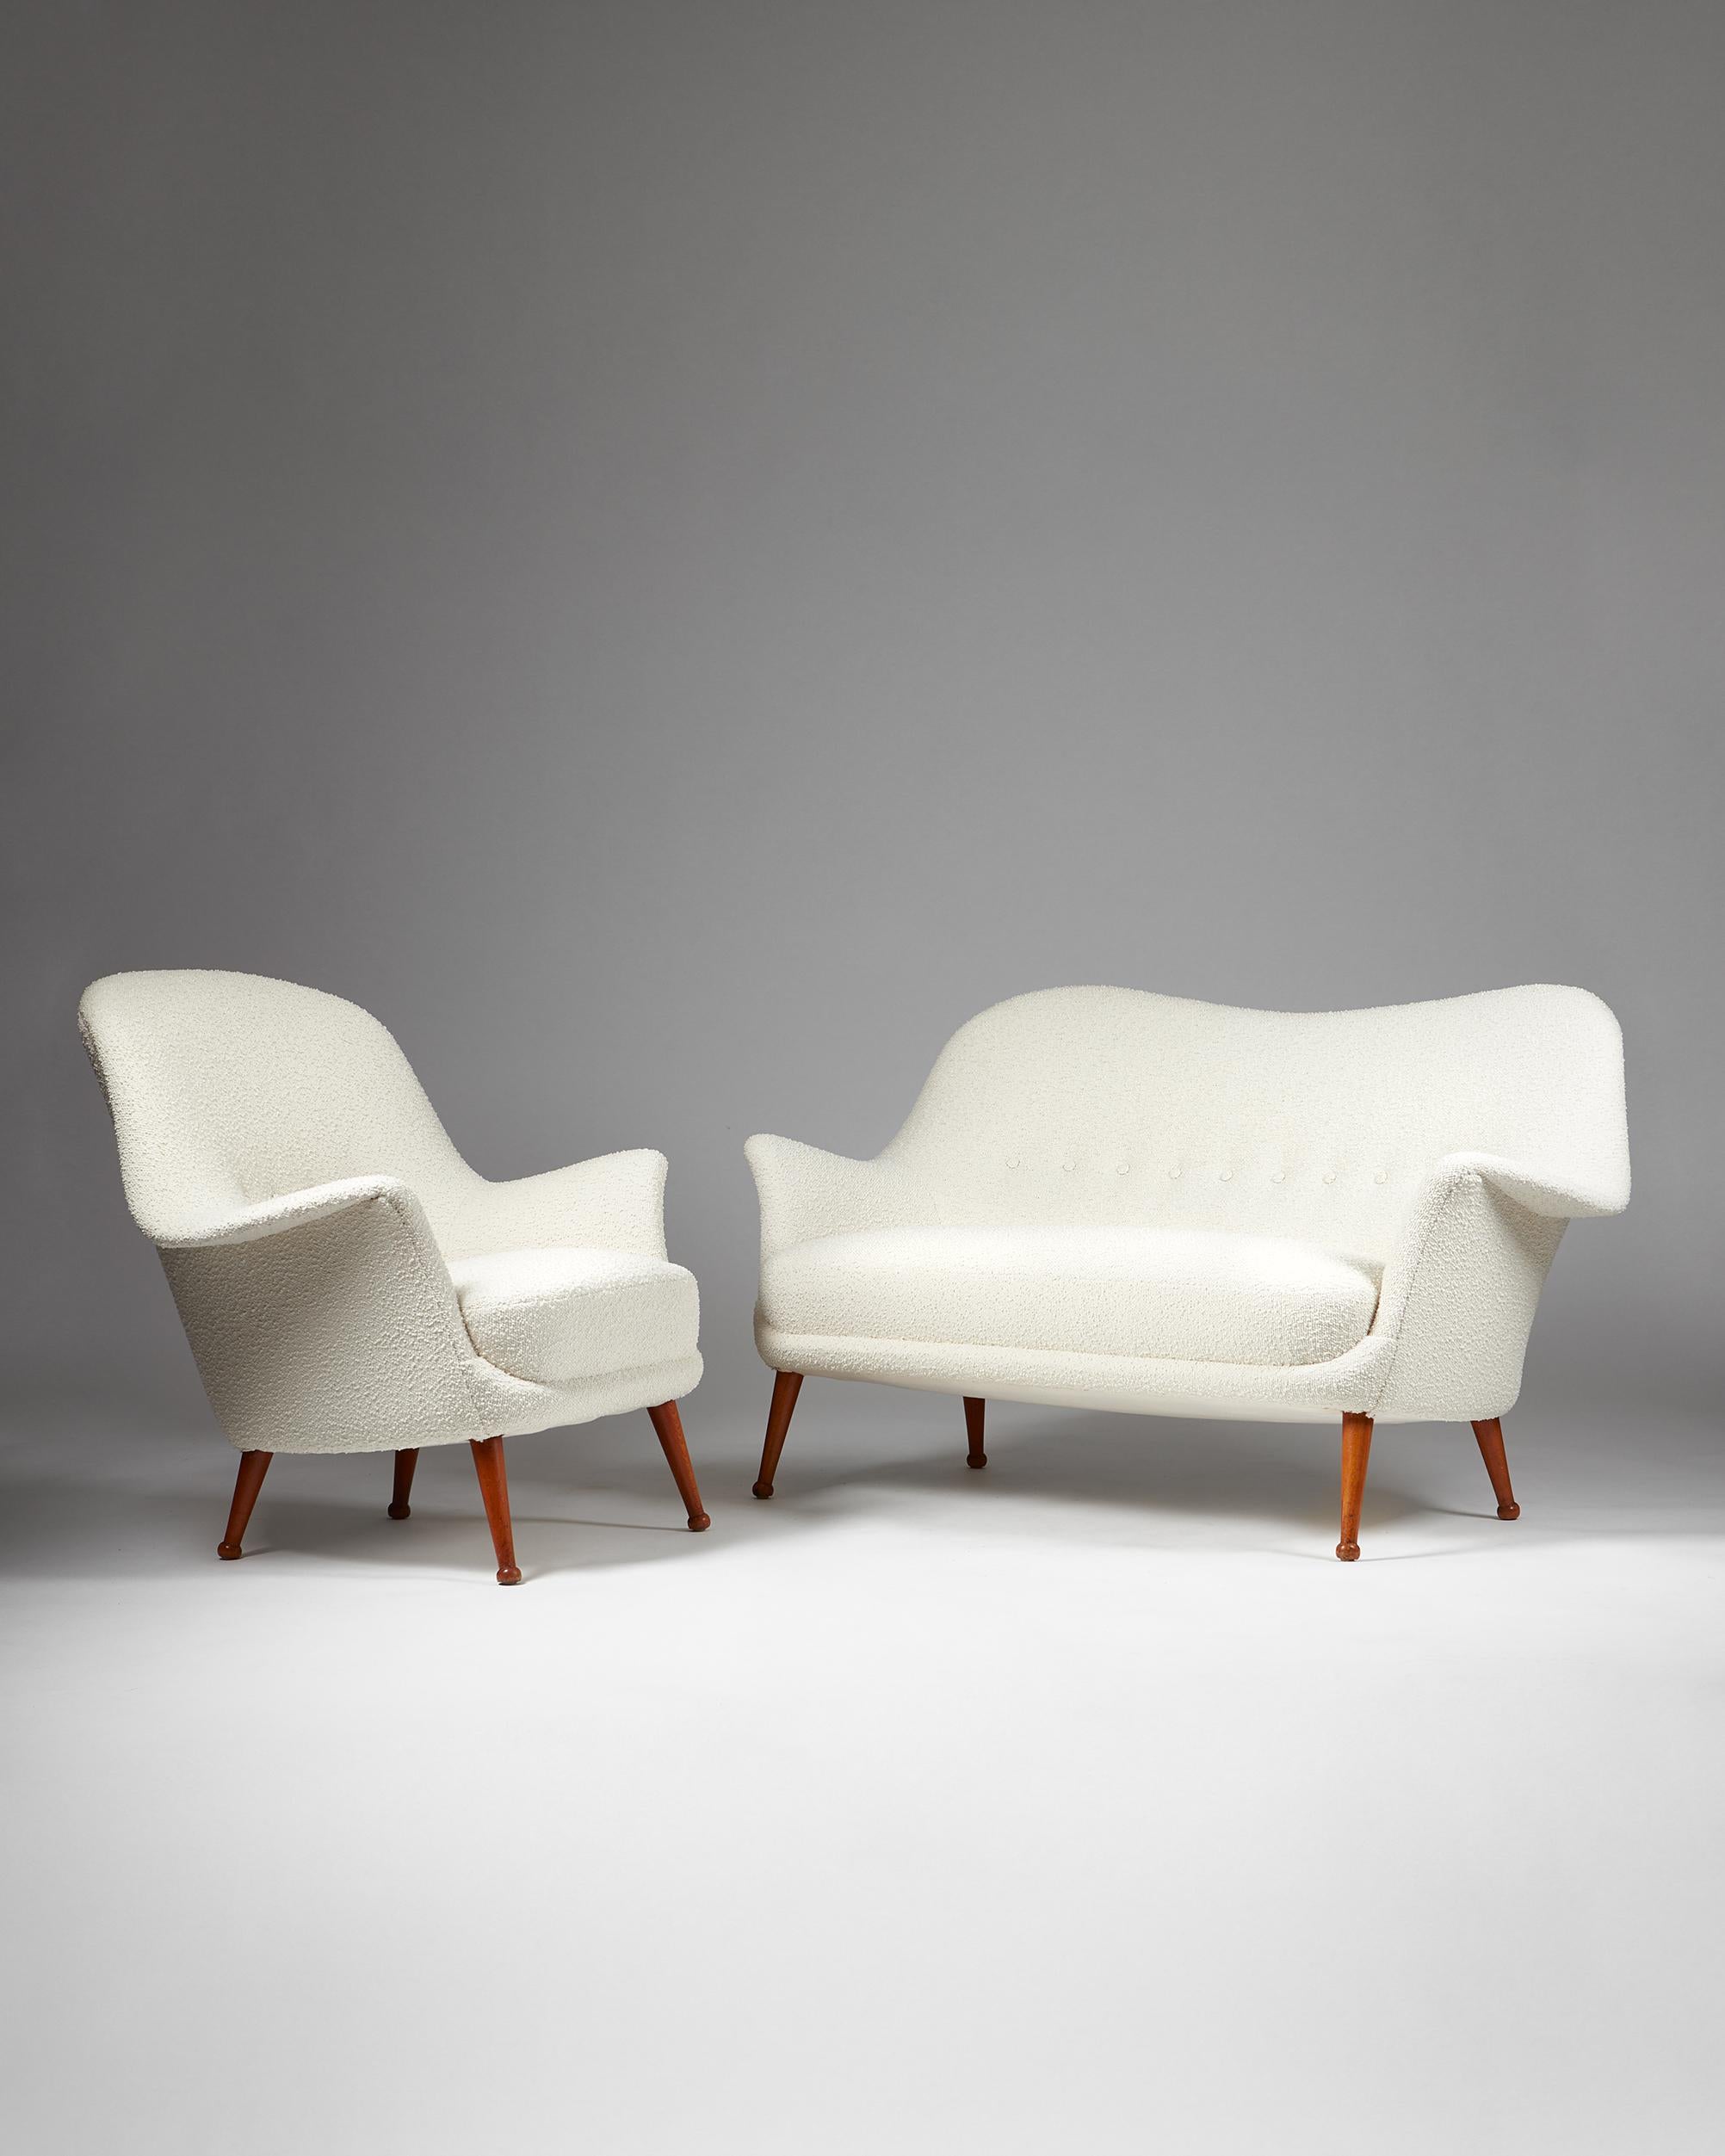 Canapé et fauteuil Divina conçus par Arne Norell, pour Norell Mbler,
Suède. 1950s.
Bois laqué et tissu d'ameublement en tissu bouclé.

Ce modèle de canapé et de fauteuil Divina combine l'utilisation par le designer suédois Arne Norells de formes